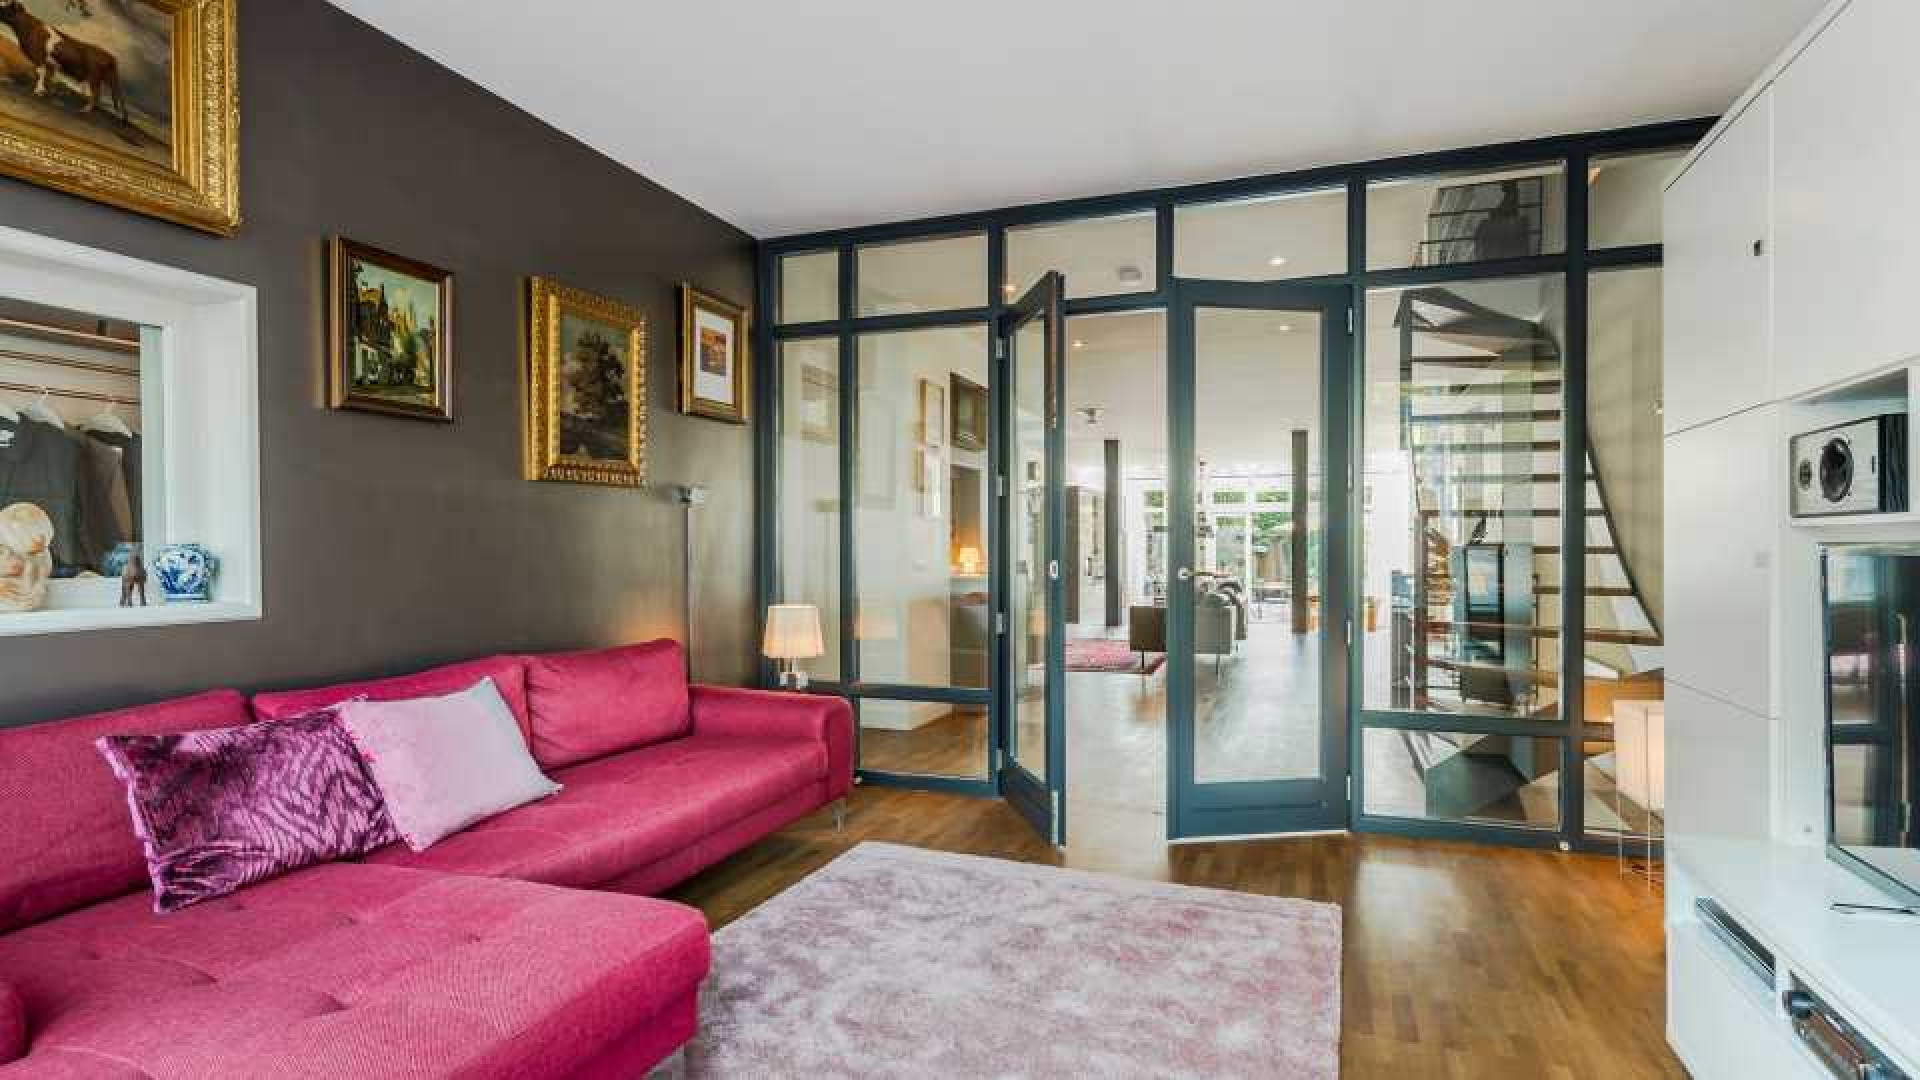 Ex Jiskefet acteur Kees Prins verkoopt zijn Amsterdamse huis met meer dan 1 miljoen euro winst! Zie foto's 5